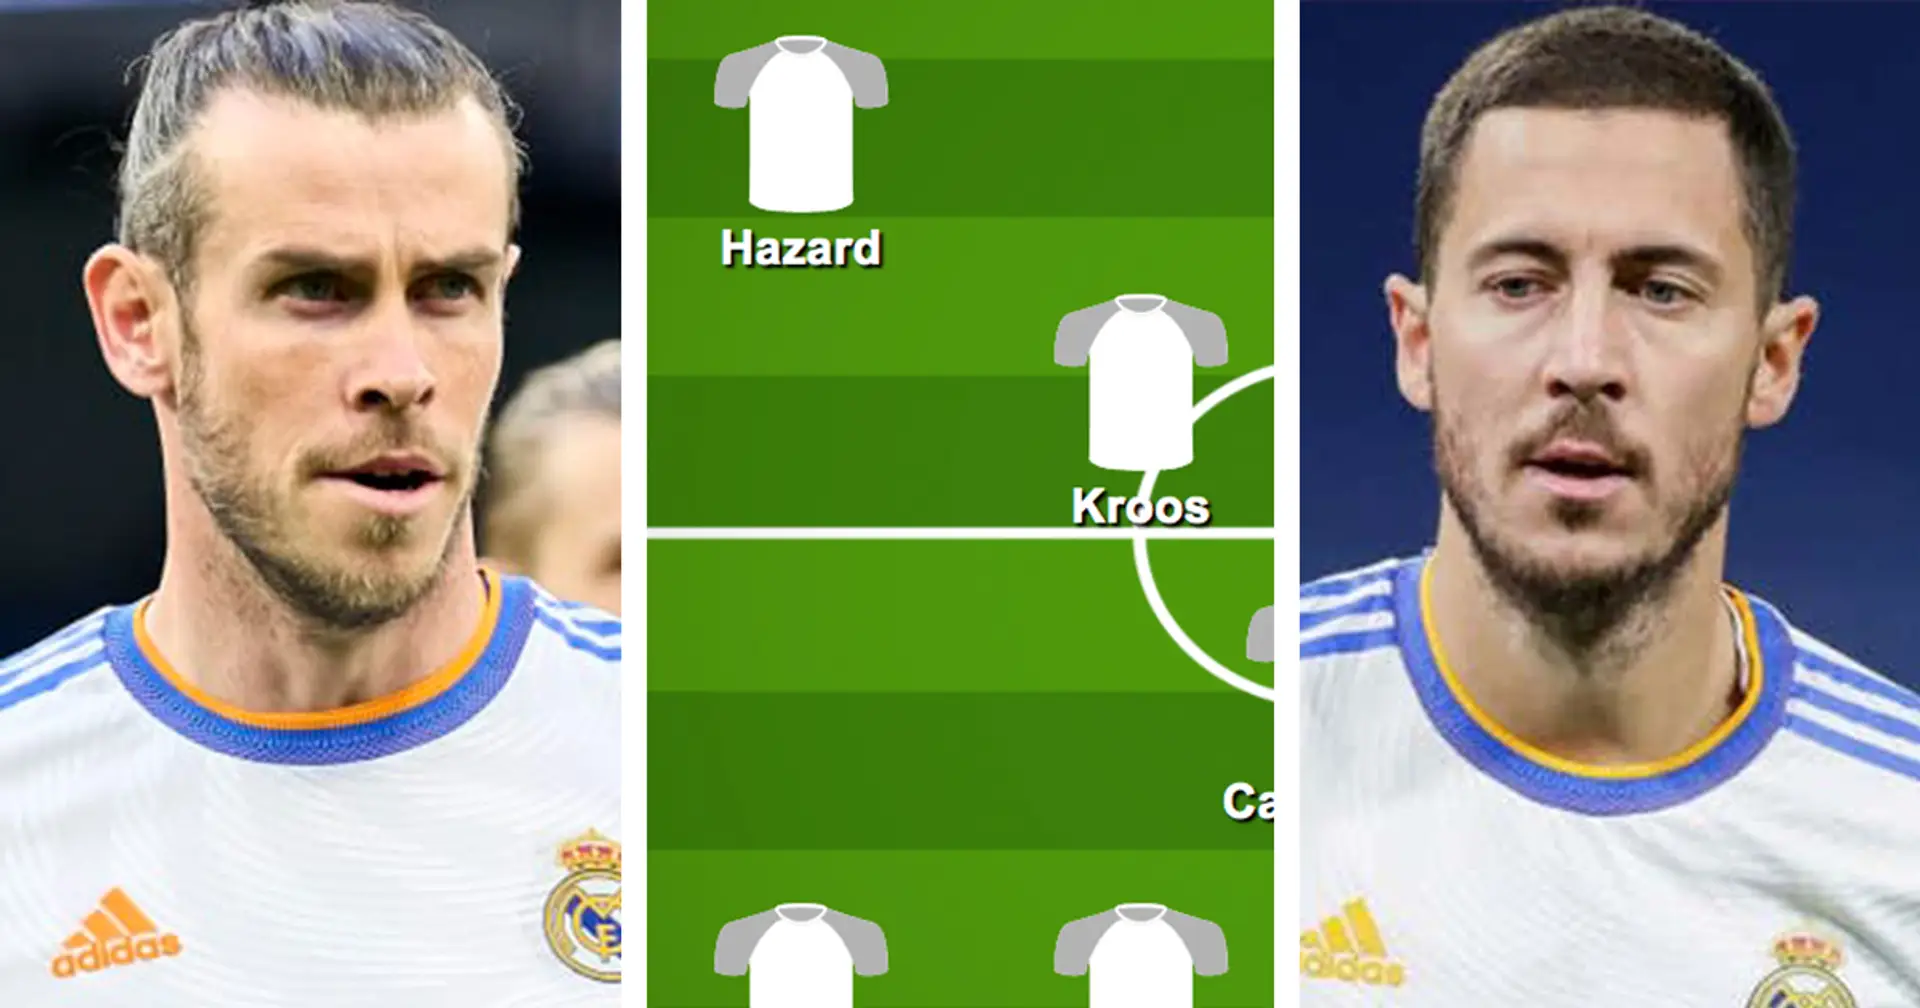 ¿Con Bale? Elige tu XI favorito del Real Madrid para el partido vs Granada entre 3 opciones